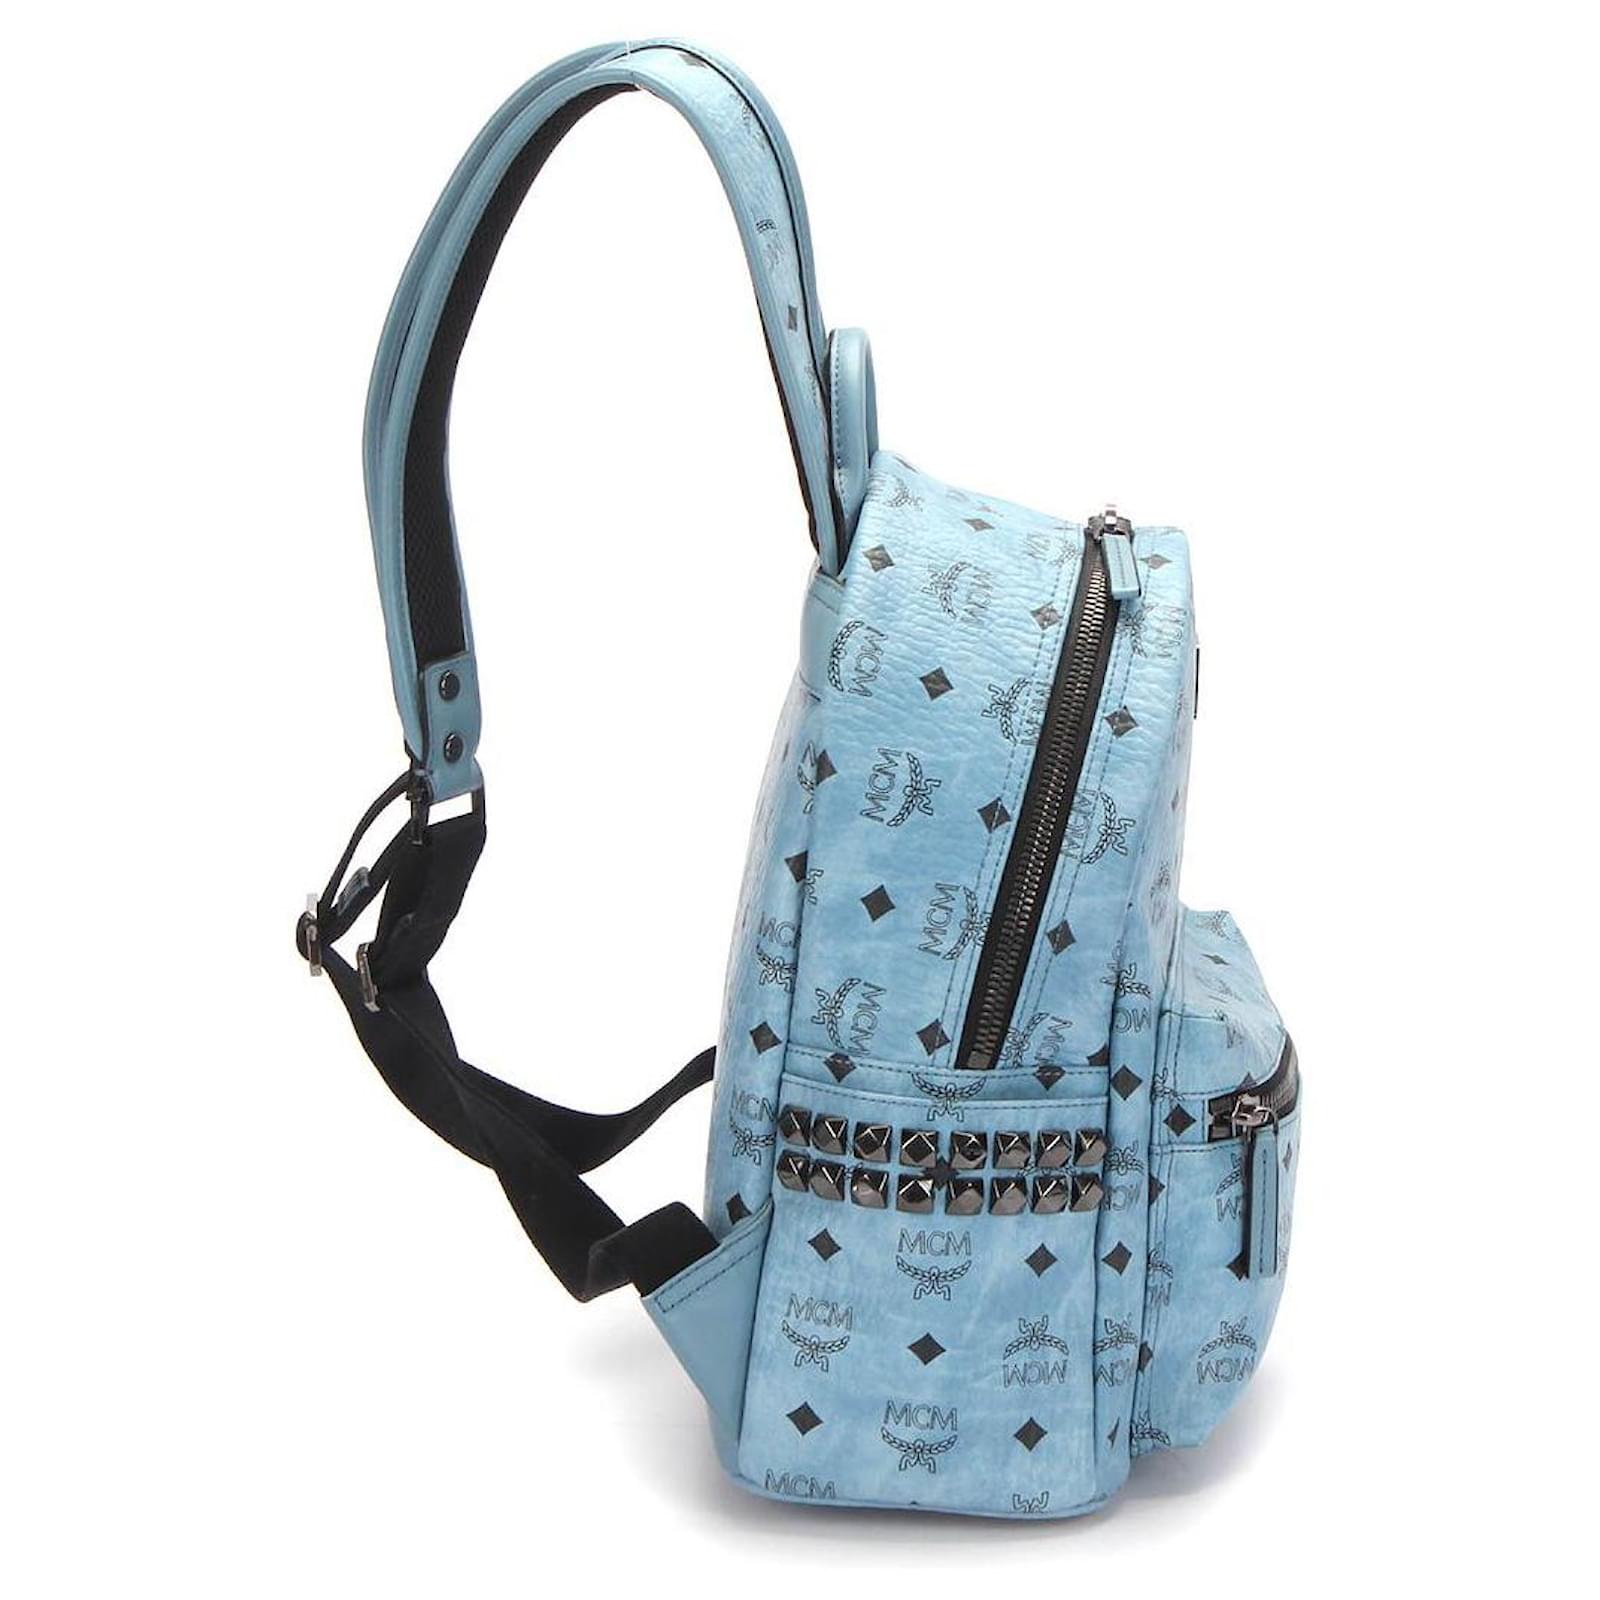 MCM Visetos Studded Stark Backpack in blue coated/waterproof